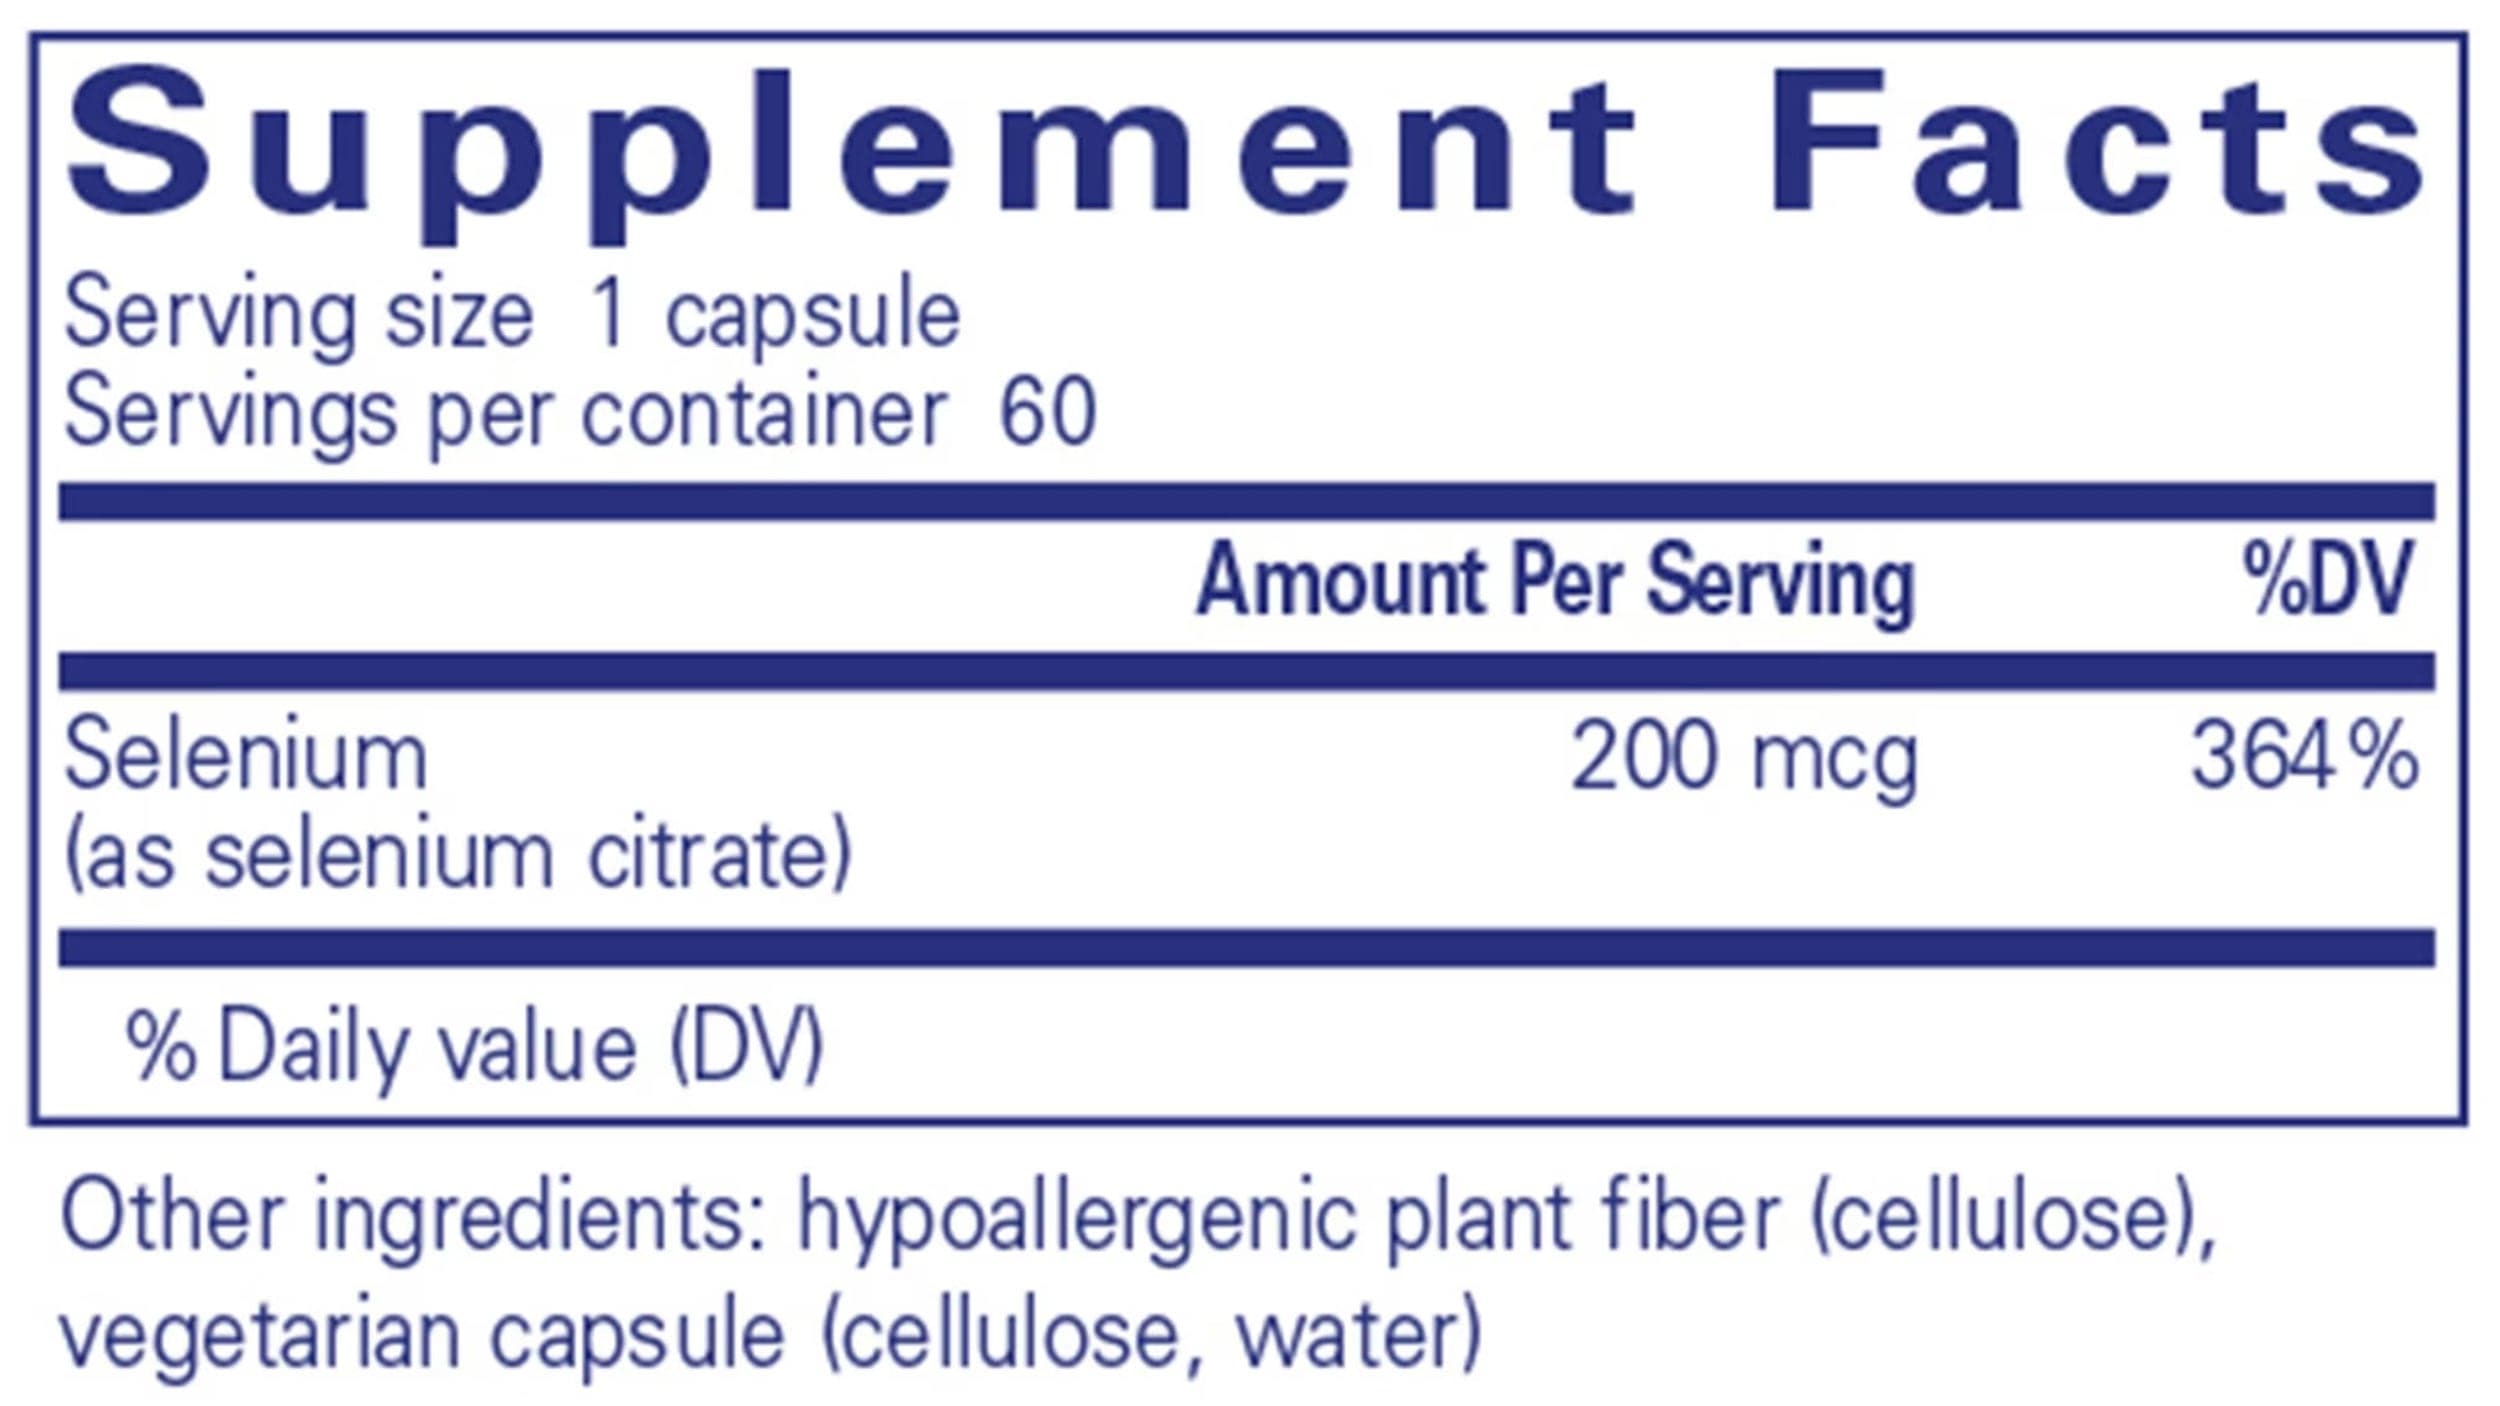 Pure Encapsulations Selenium (citrate) Ingredients 